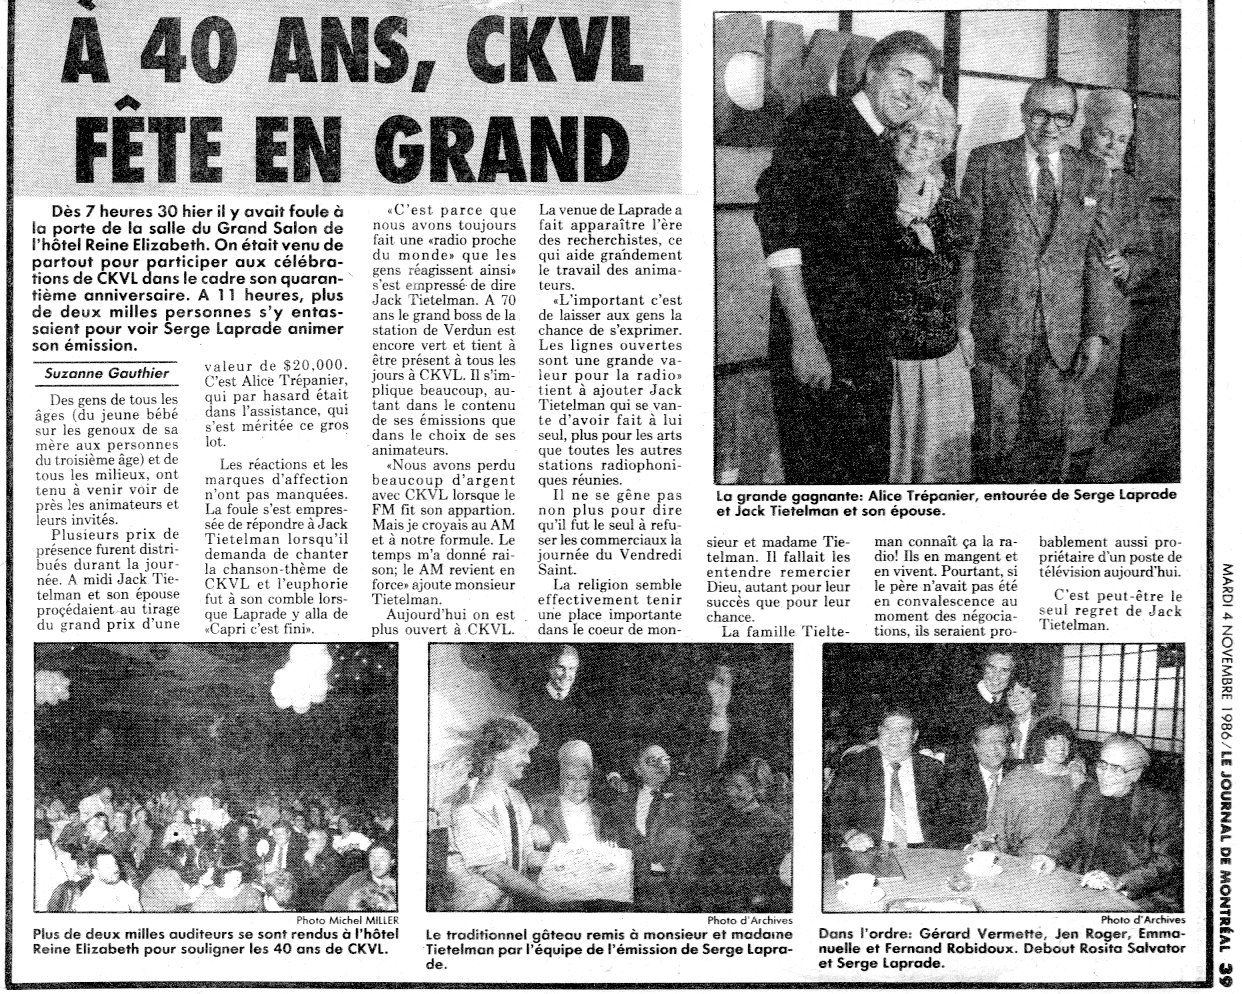 40 ans de CKVL